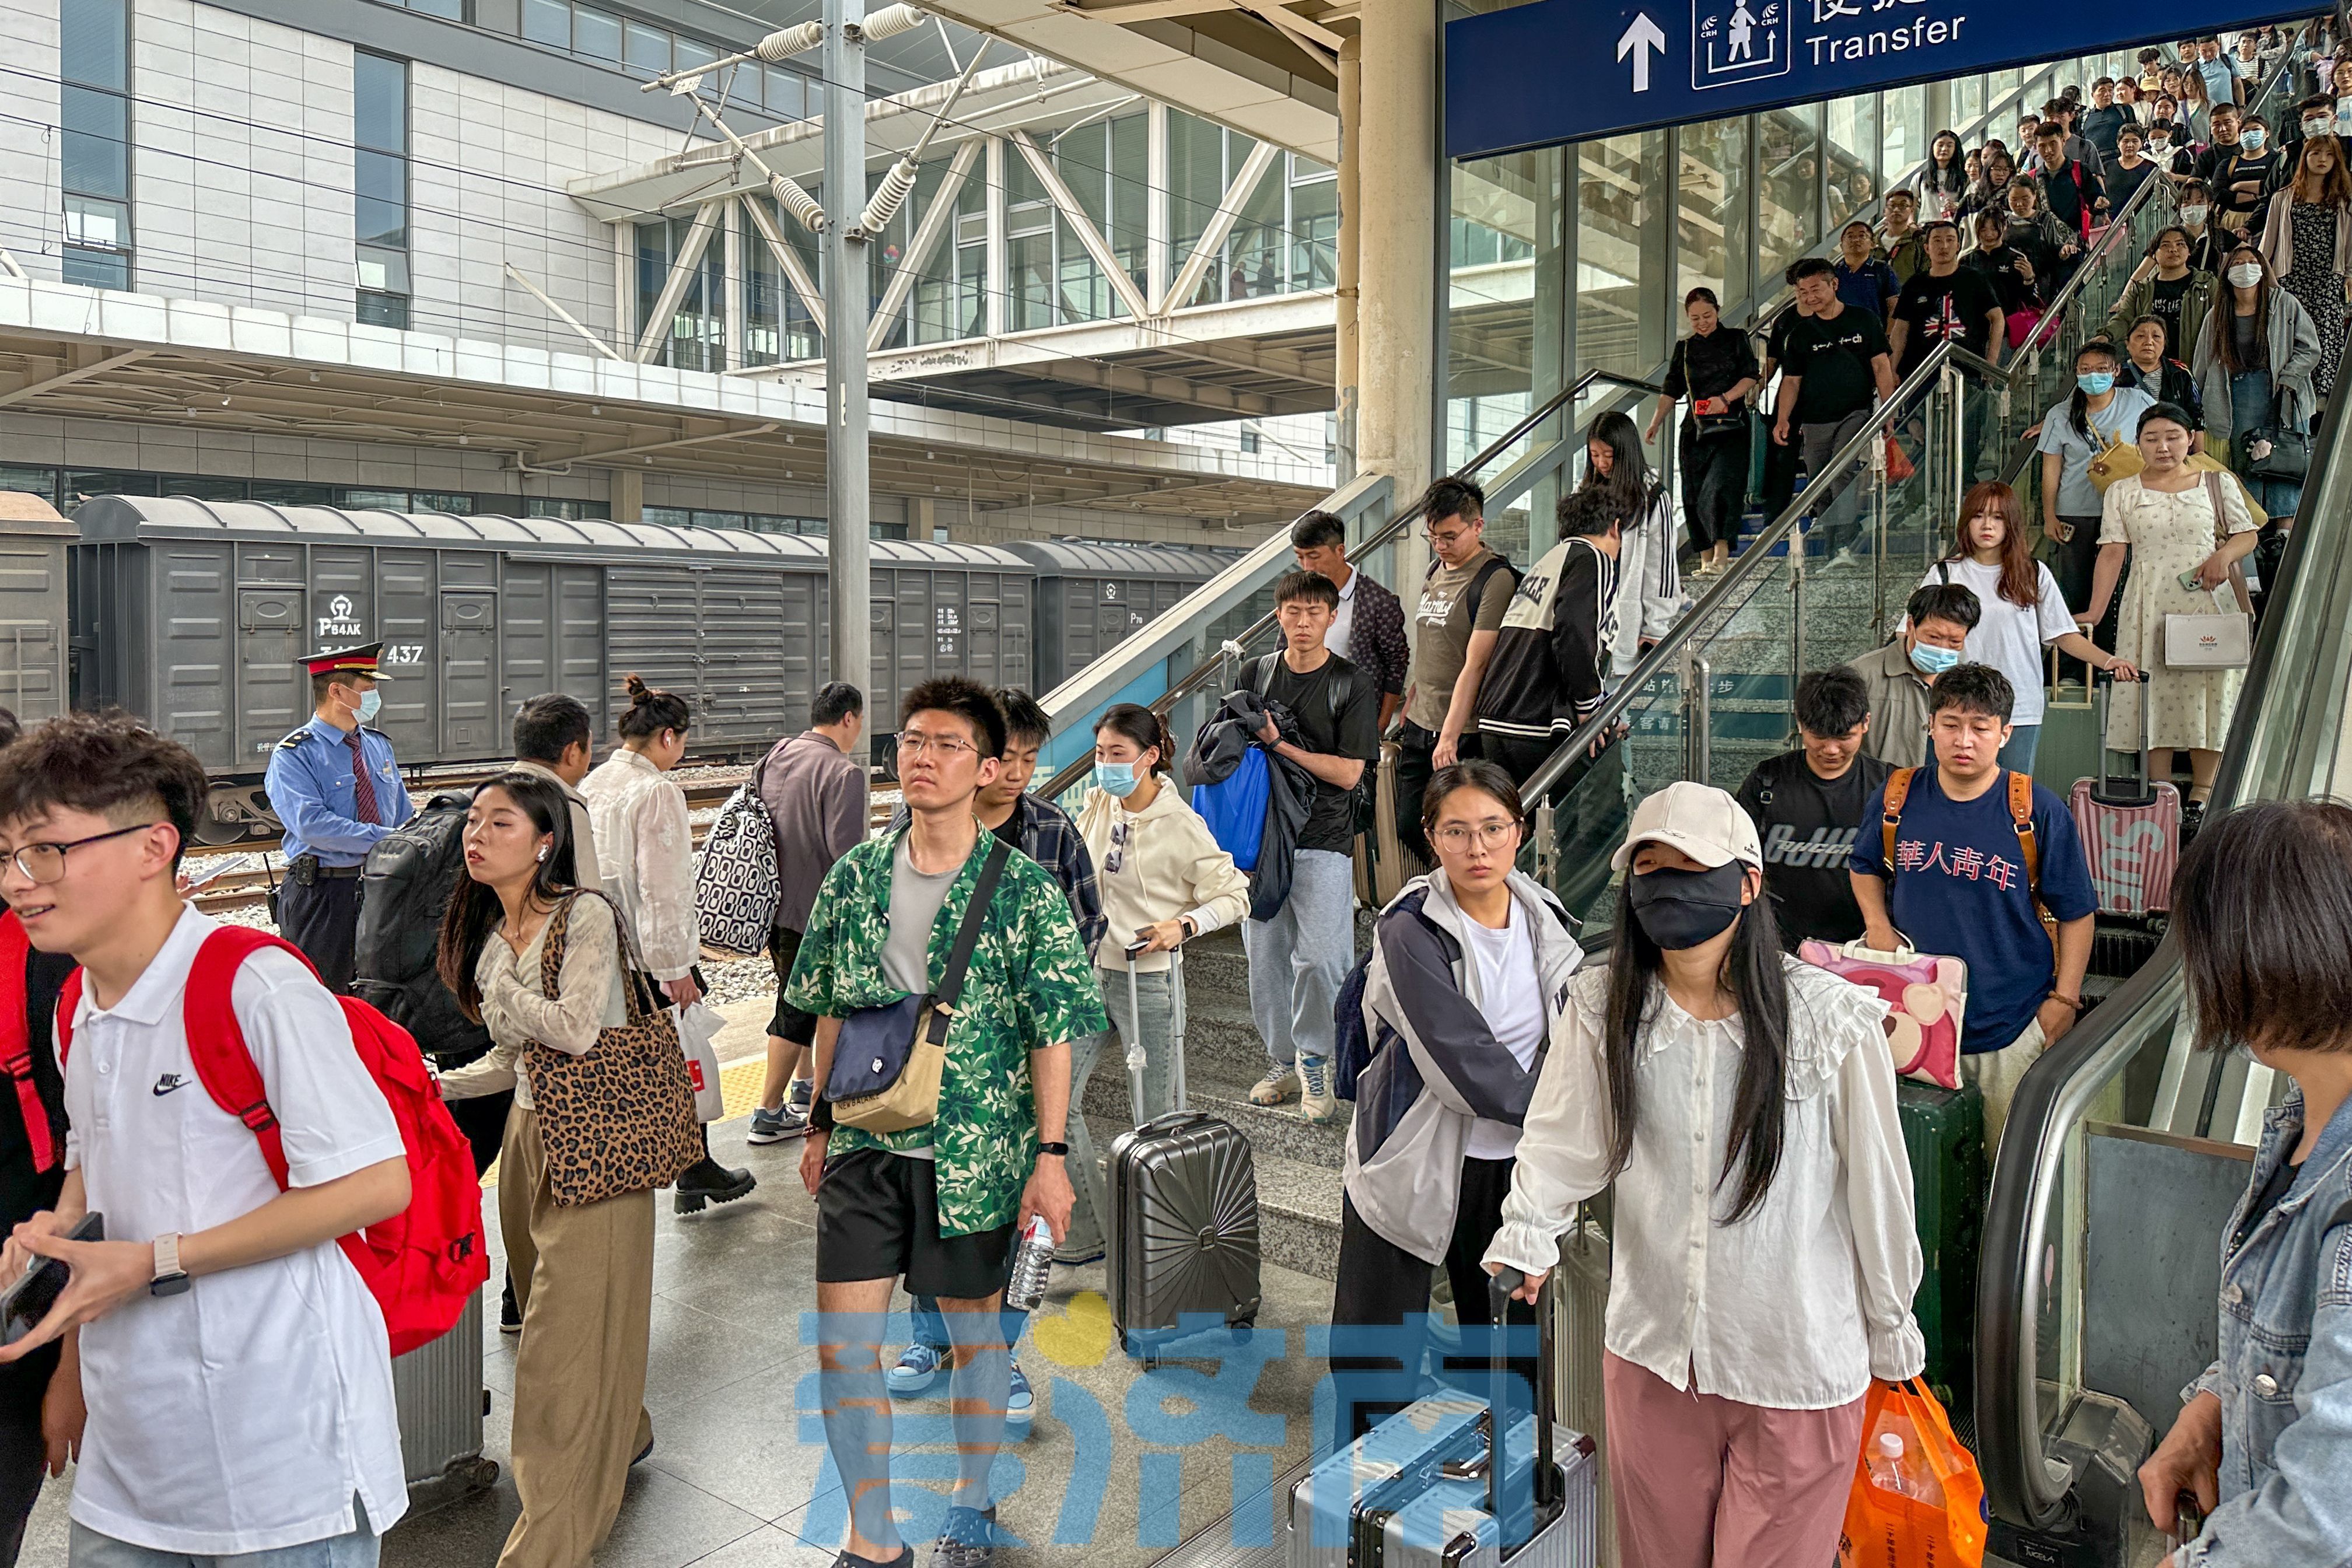 国铁济南局五一假期运输启动 预计发送旅客710万人次